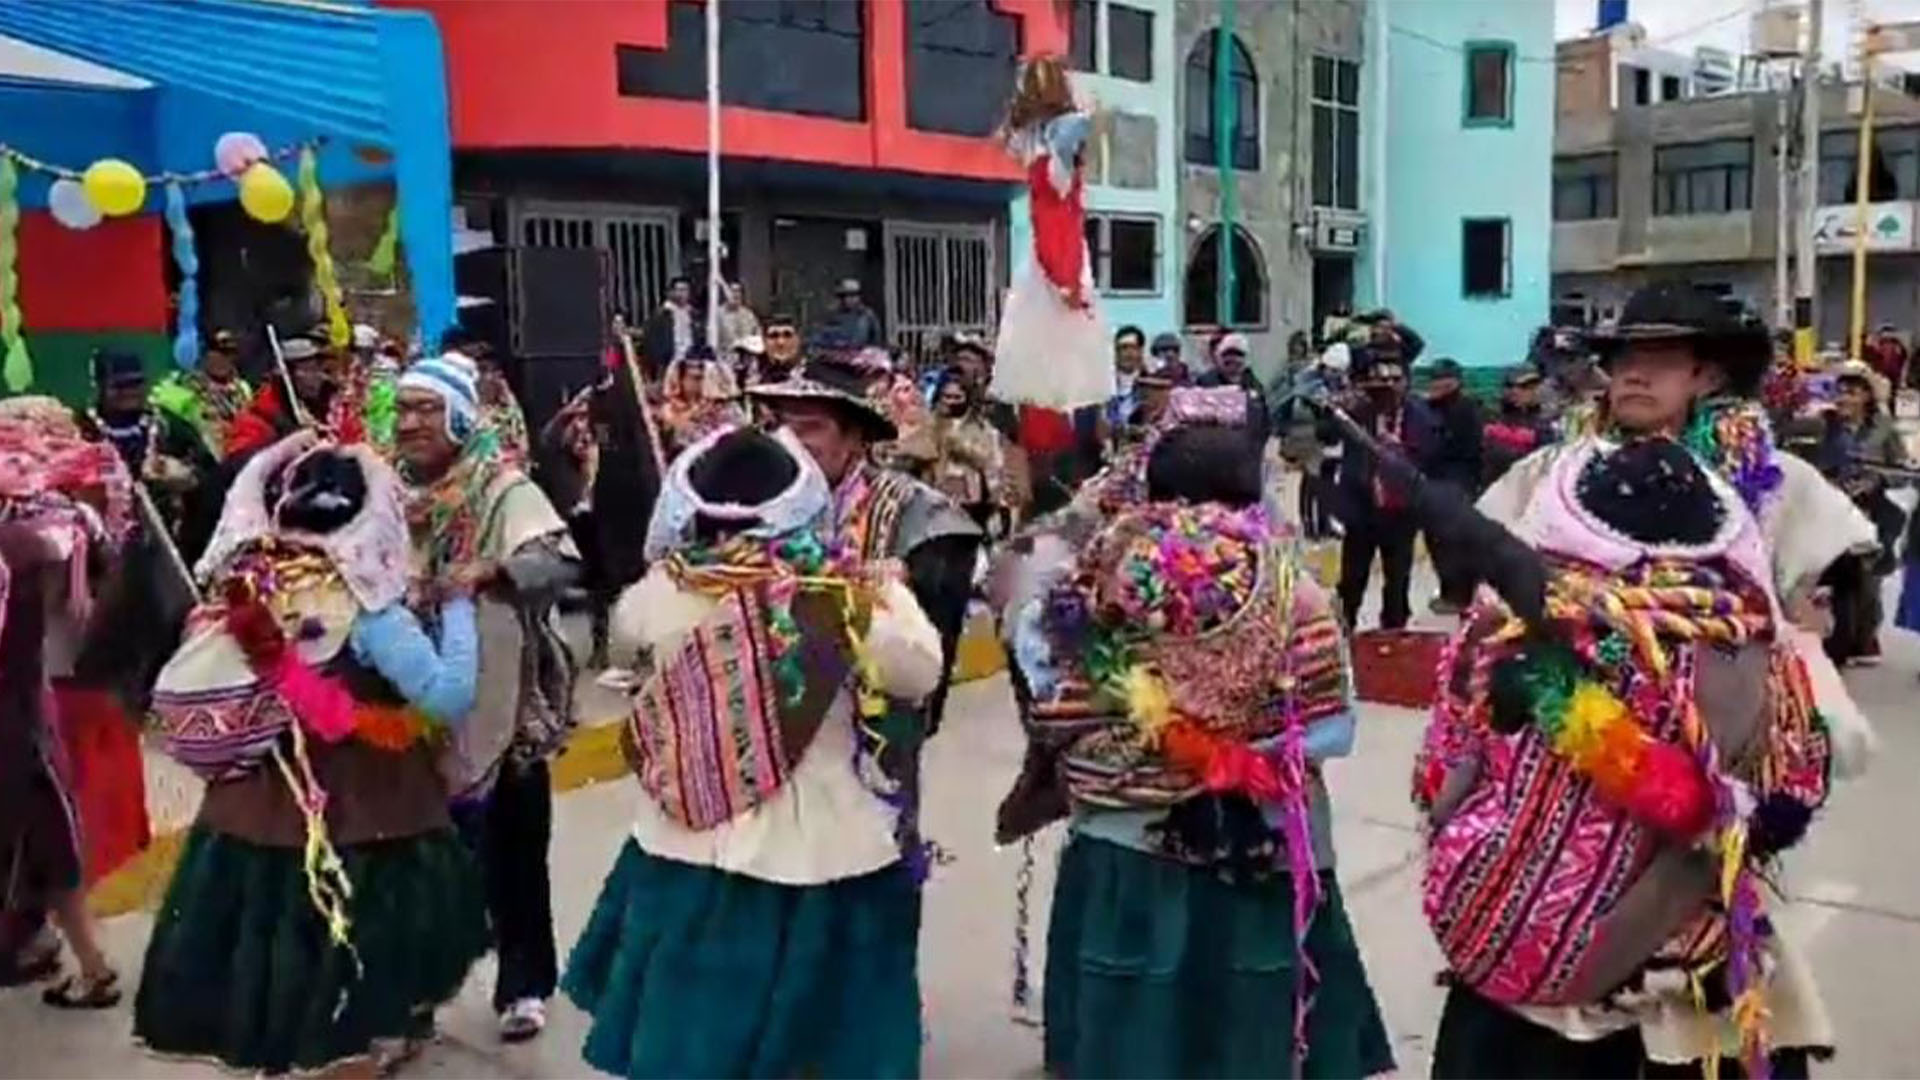 Se realizó la costumbre ancestral de Chacu Apaycuy por motivo de carnavales